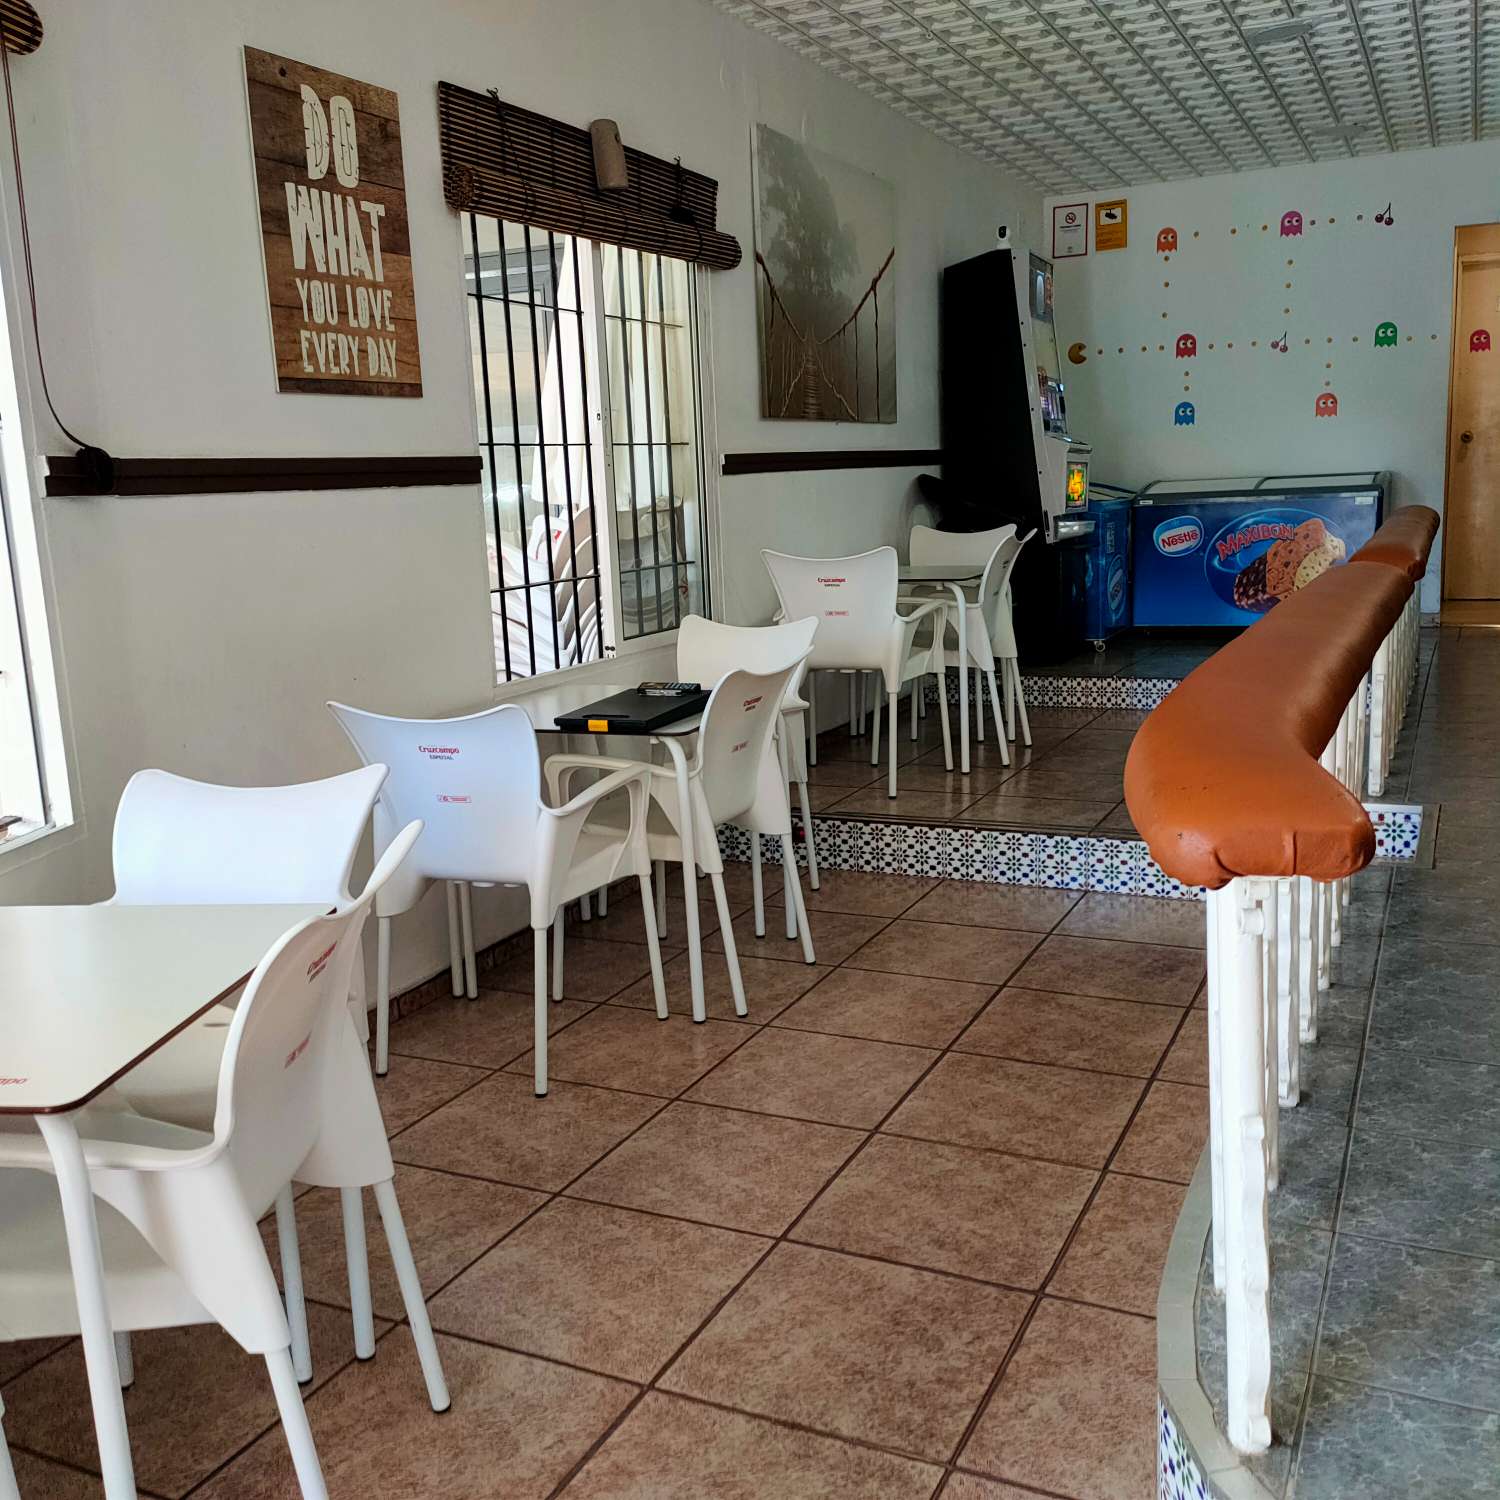 مقهى بار للبيع في توريمولينوس - إيجار منخفض - 300 متر من بلايا لا كاريهويلا توريمولينوس